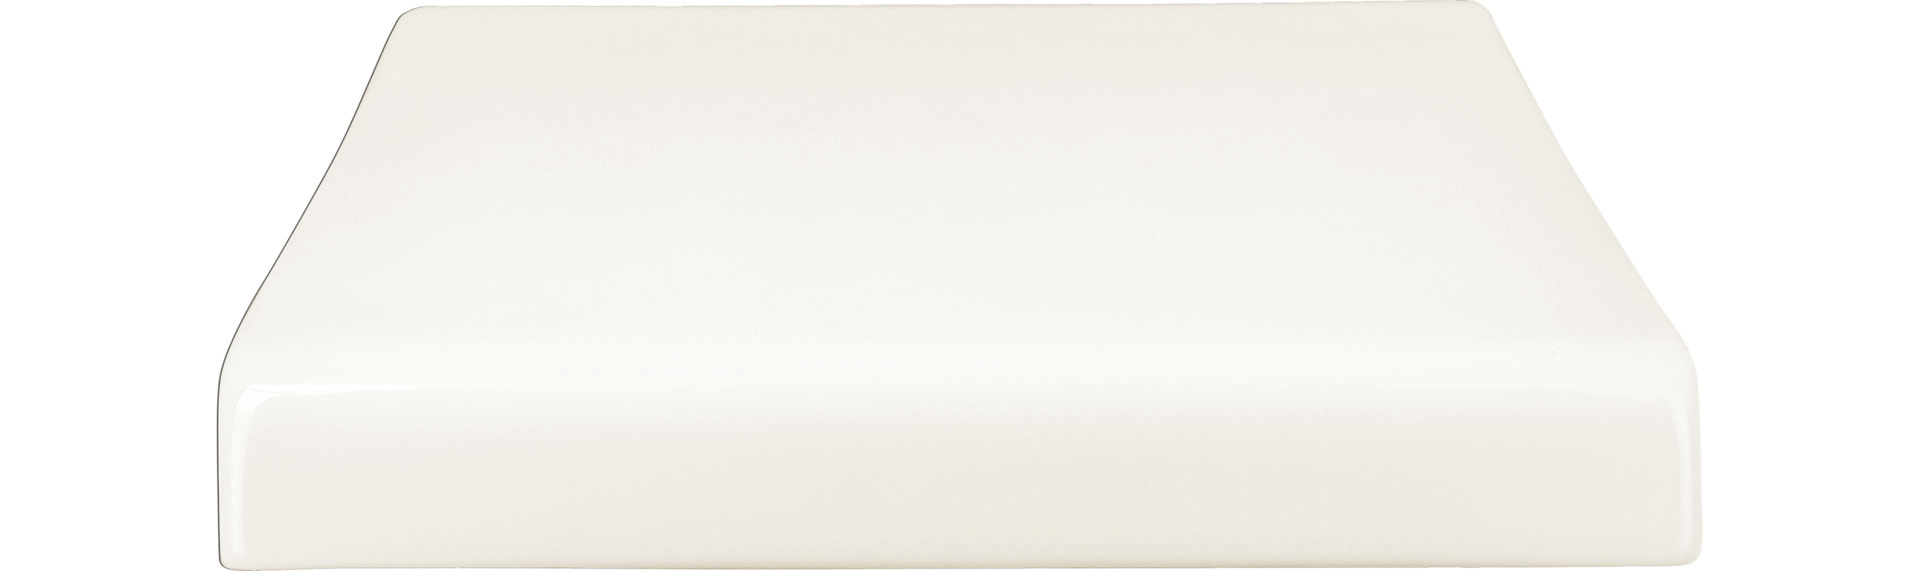 Platte rechteckig erhöht shared 345 x 250 mm plain-white